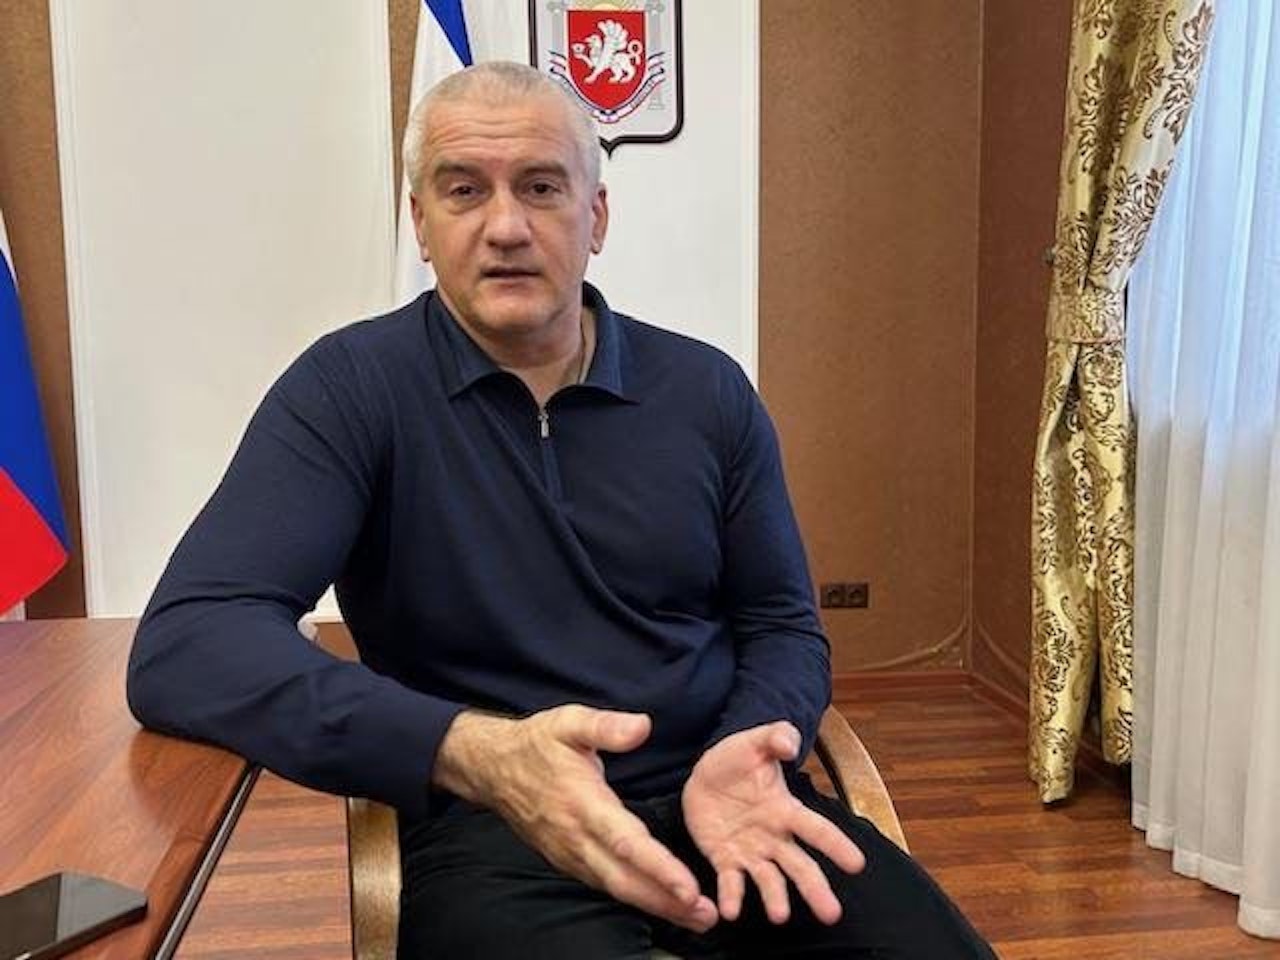 Der Chef der Schwarzmeer-Halbinsel Krim, Sergej Aksjonow, sitzt in einem Besprechungsraum des Regierungssitzes